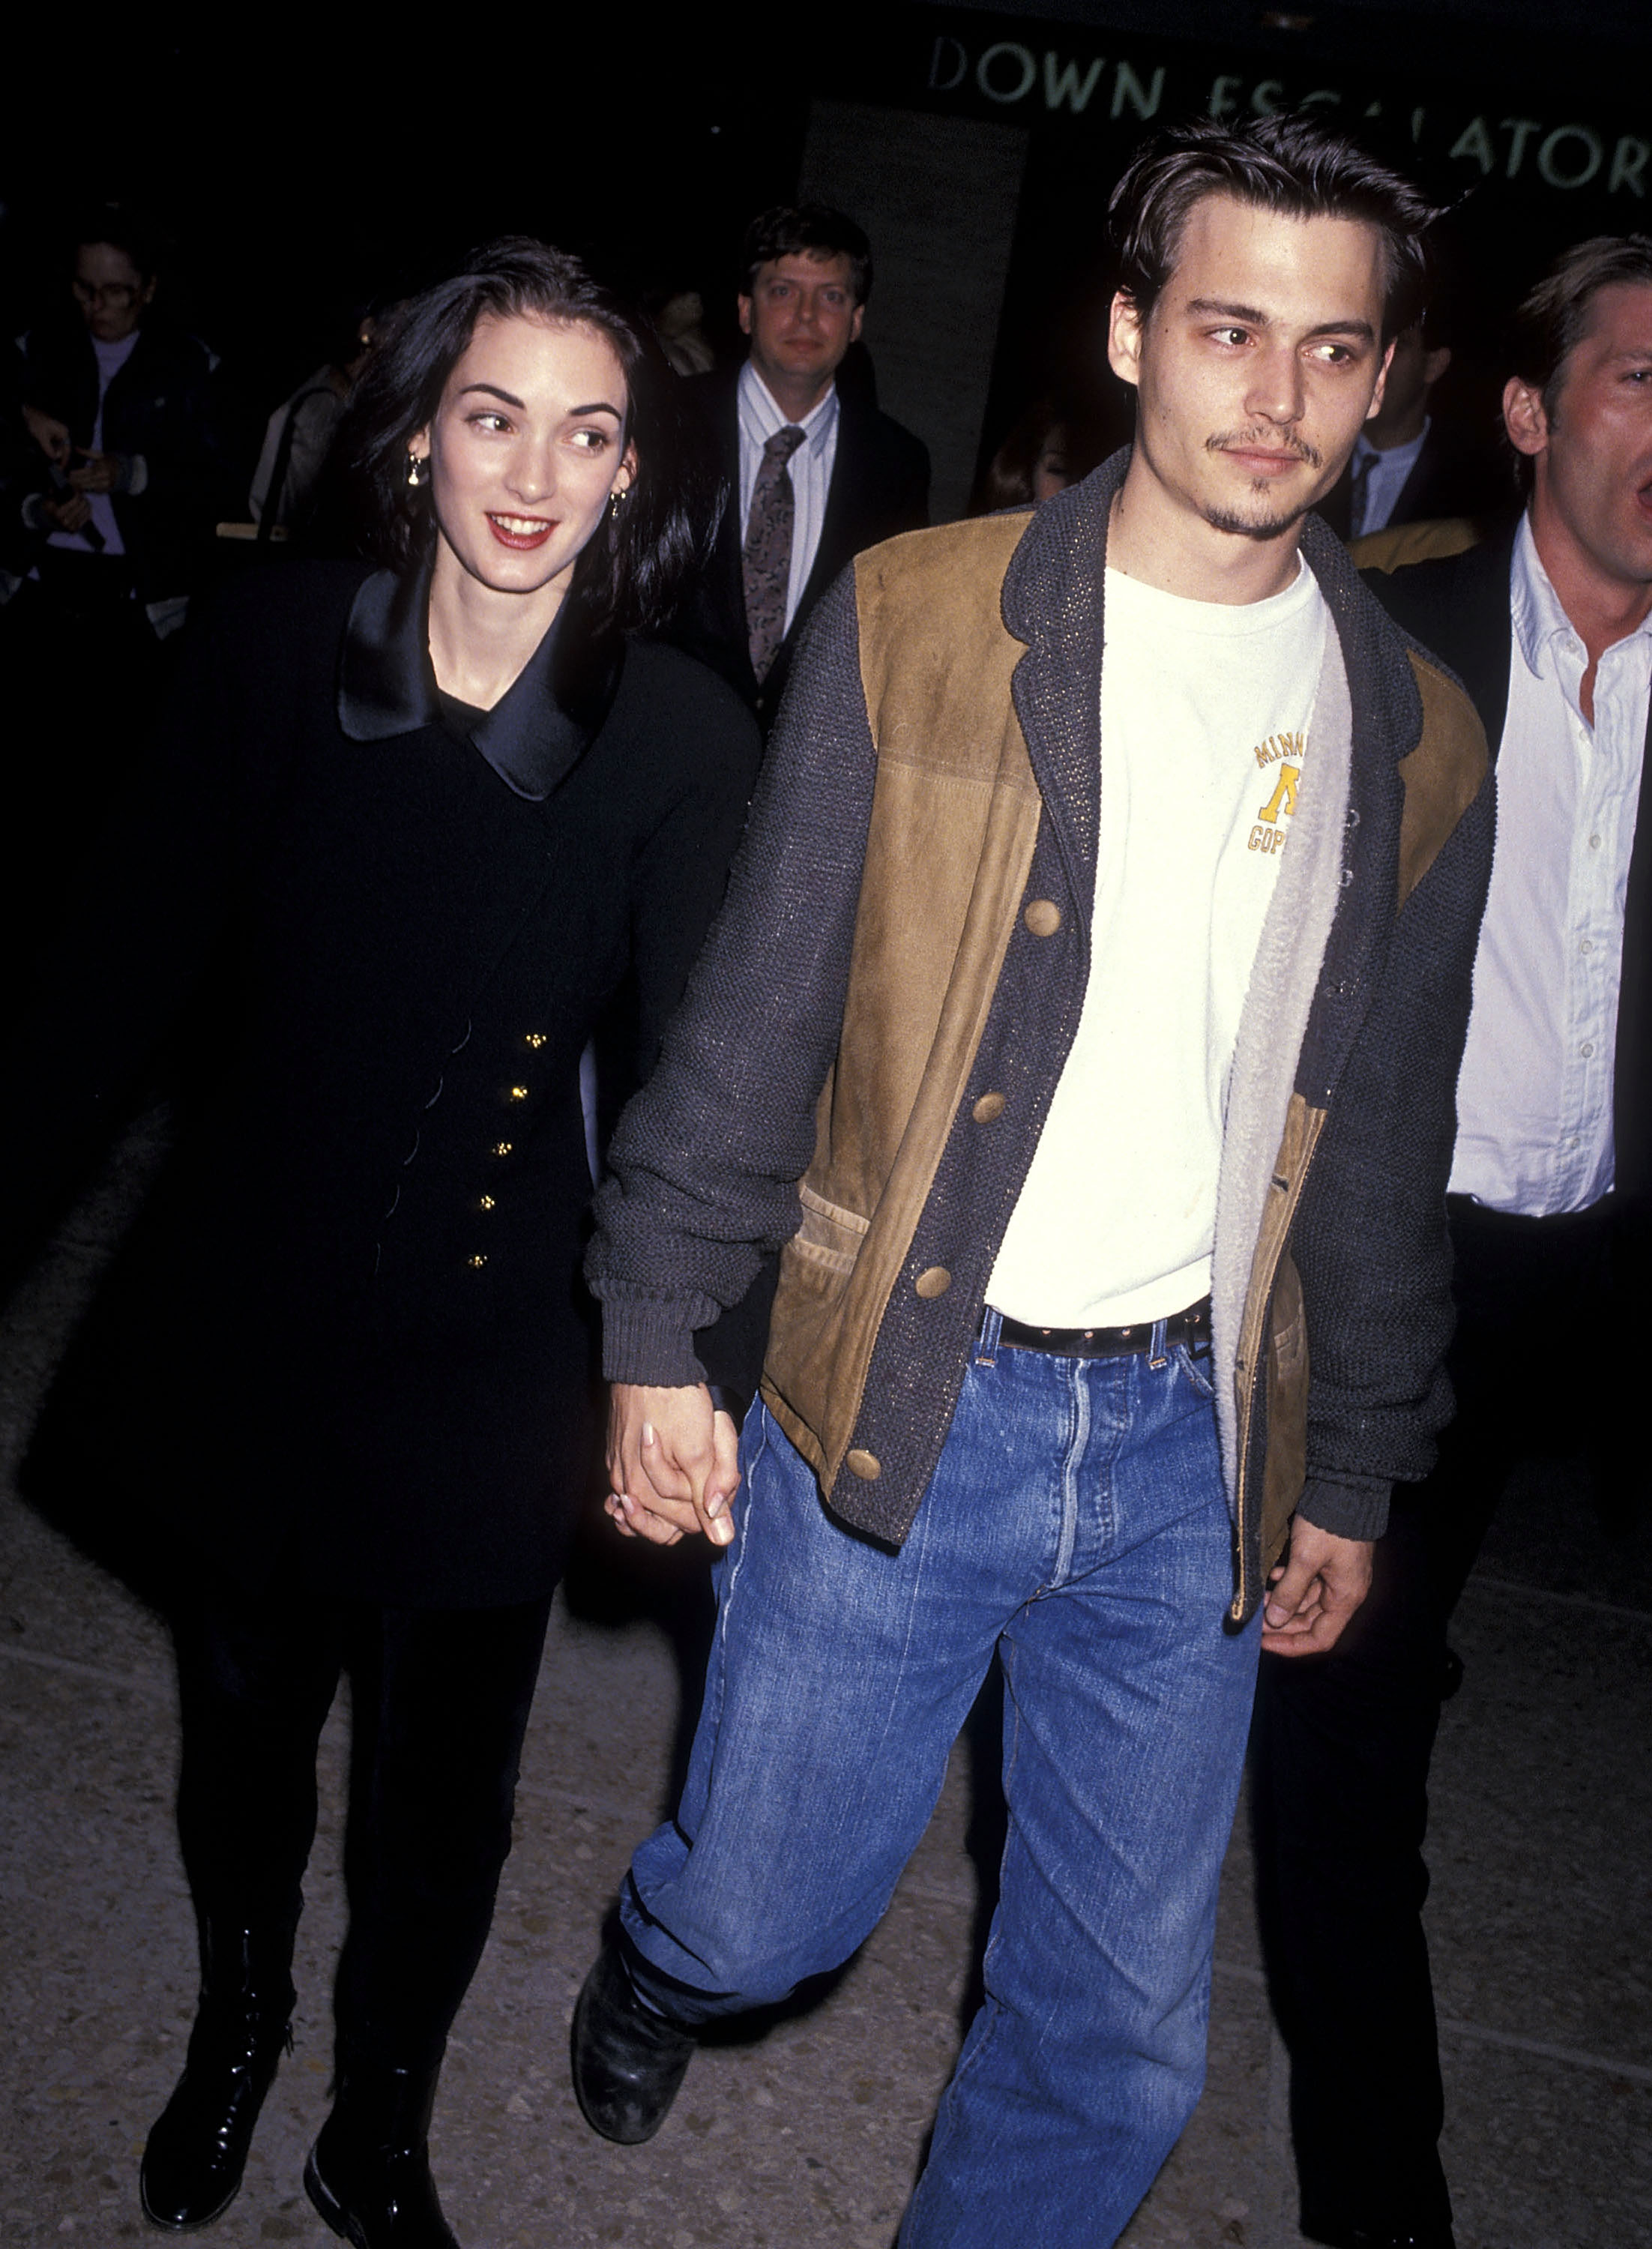 Winona Ryder and Johnny Depp